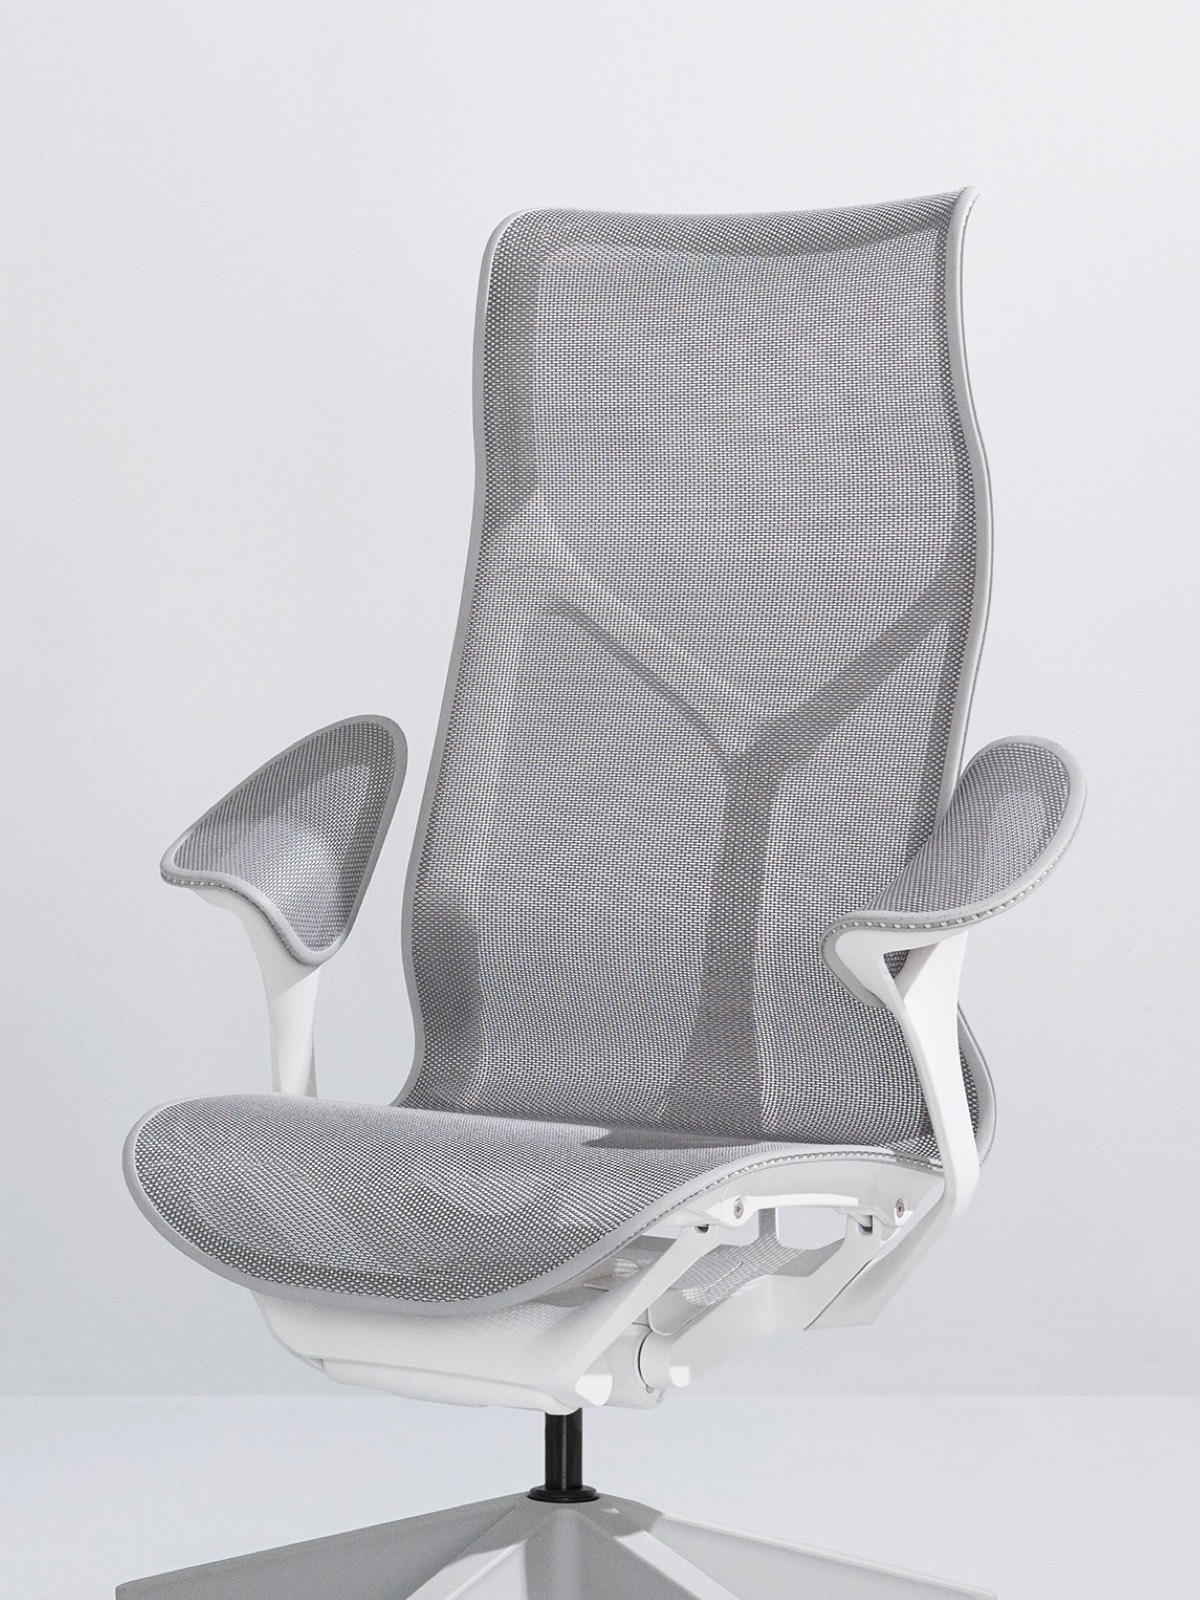 一个Mineral灰色高背Cosm椅子与白色框架和叶臂在浅灰色的背景上。